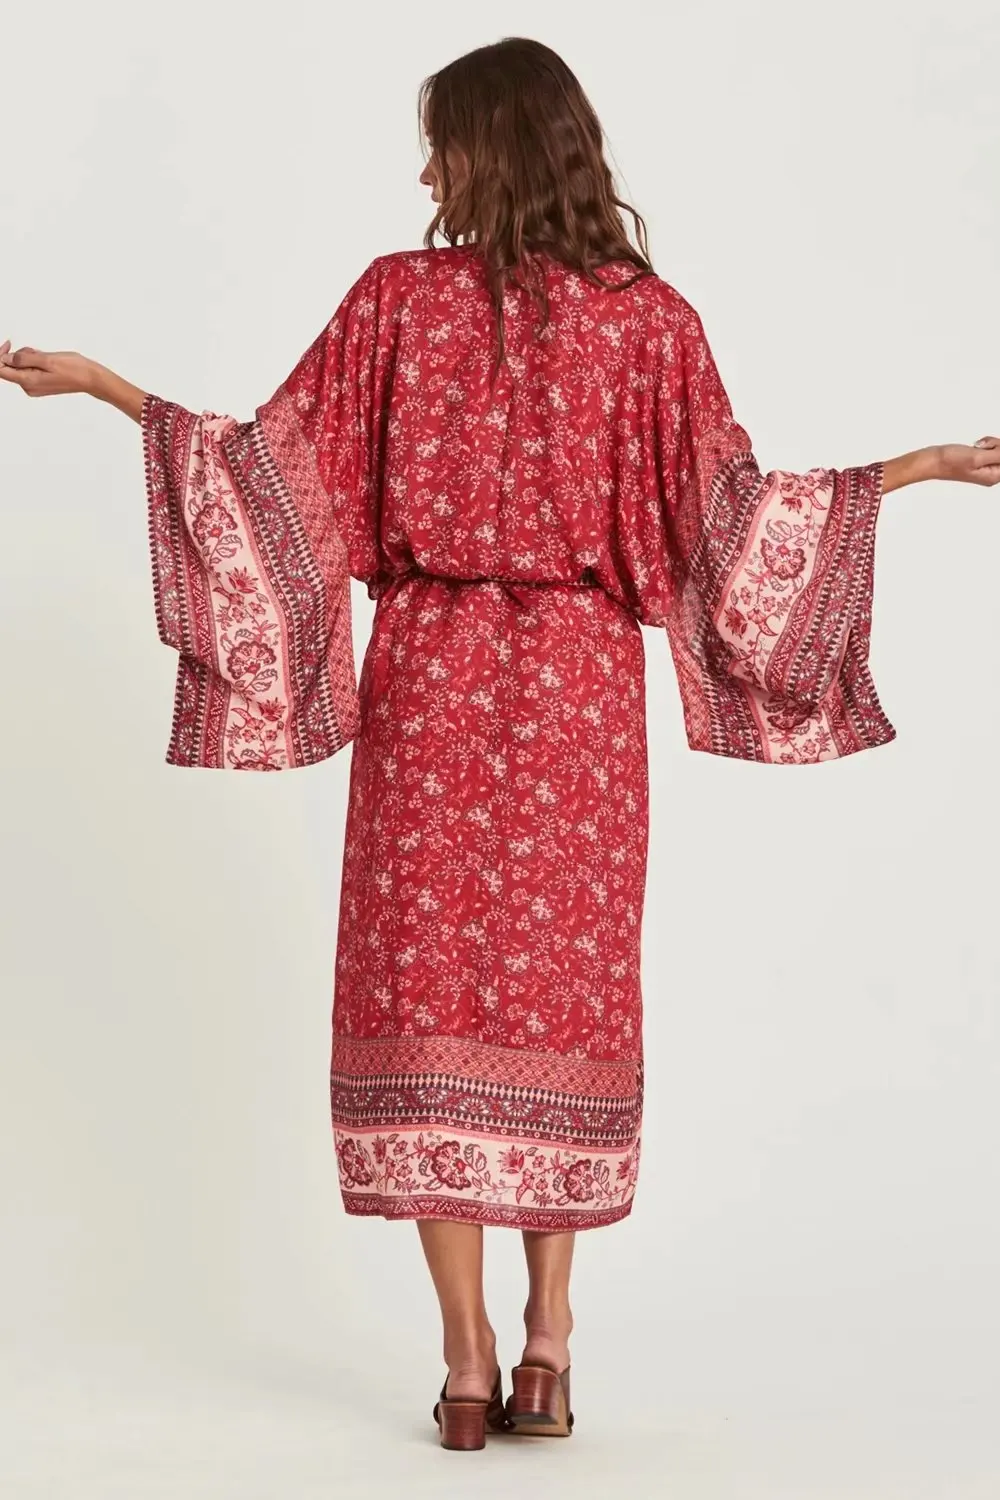 Богемный Вдохновленный женский летний кардиган кимоно с длинным рукавом красный цветочный принт Бохо пляжный топ накидка Женская Длинная блузка Рубашки Цыганский